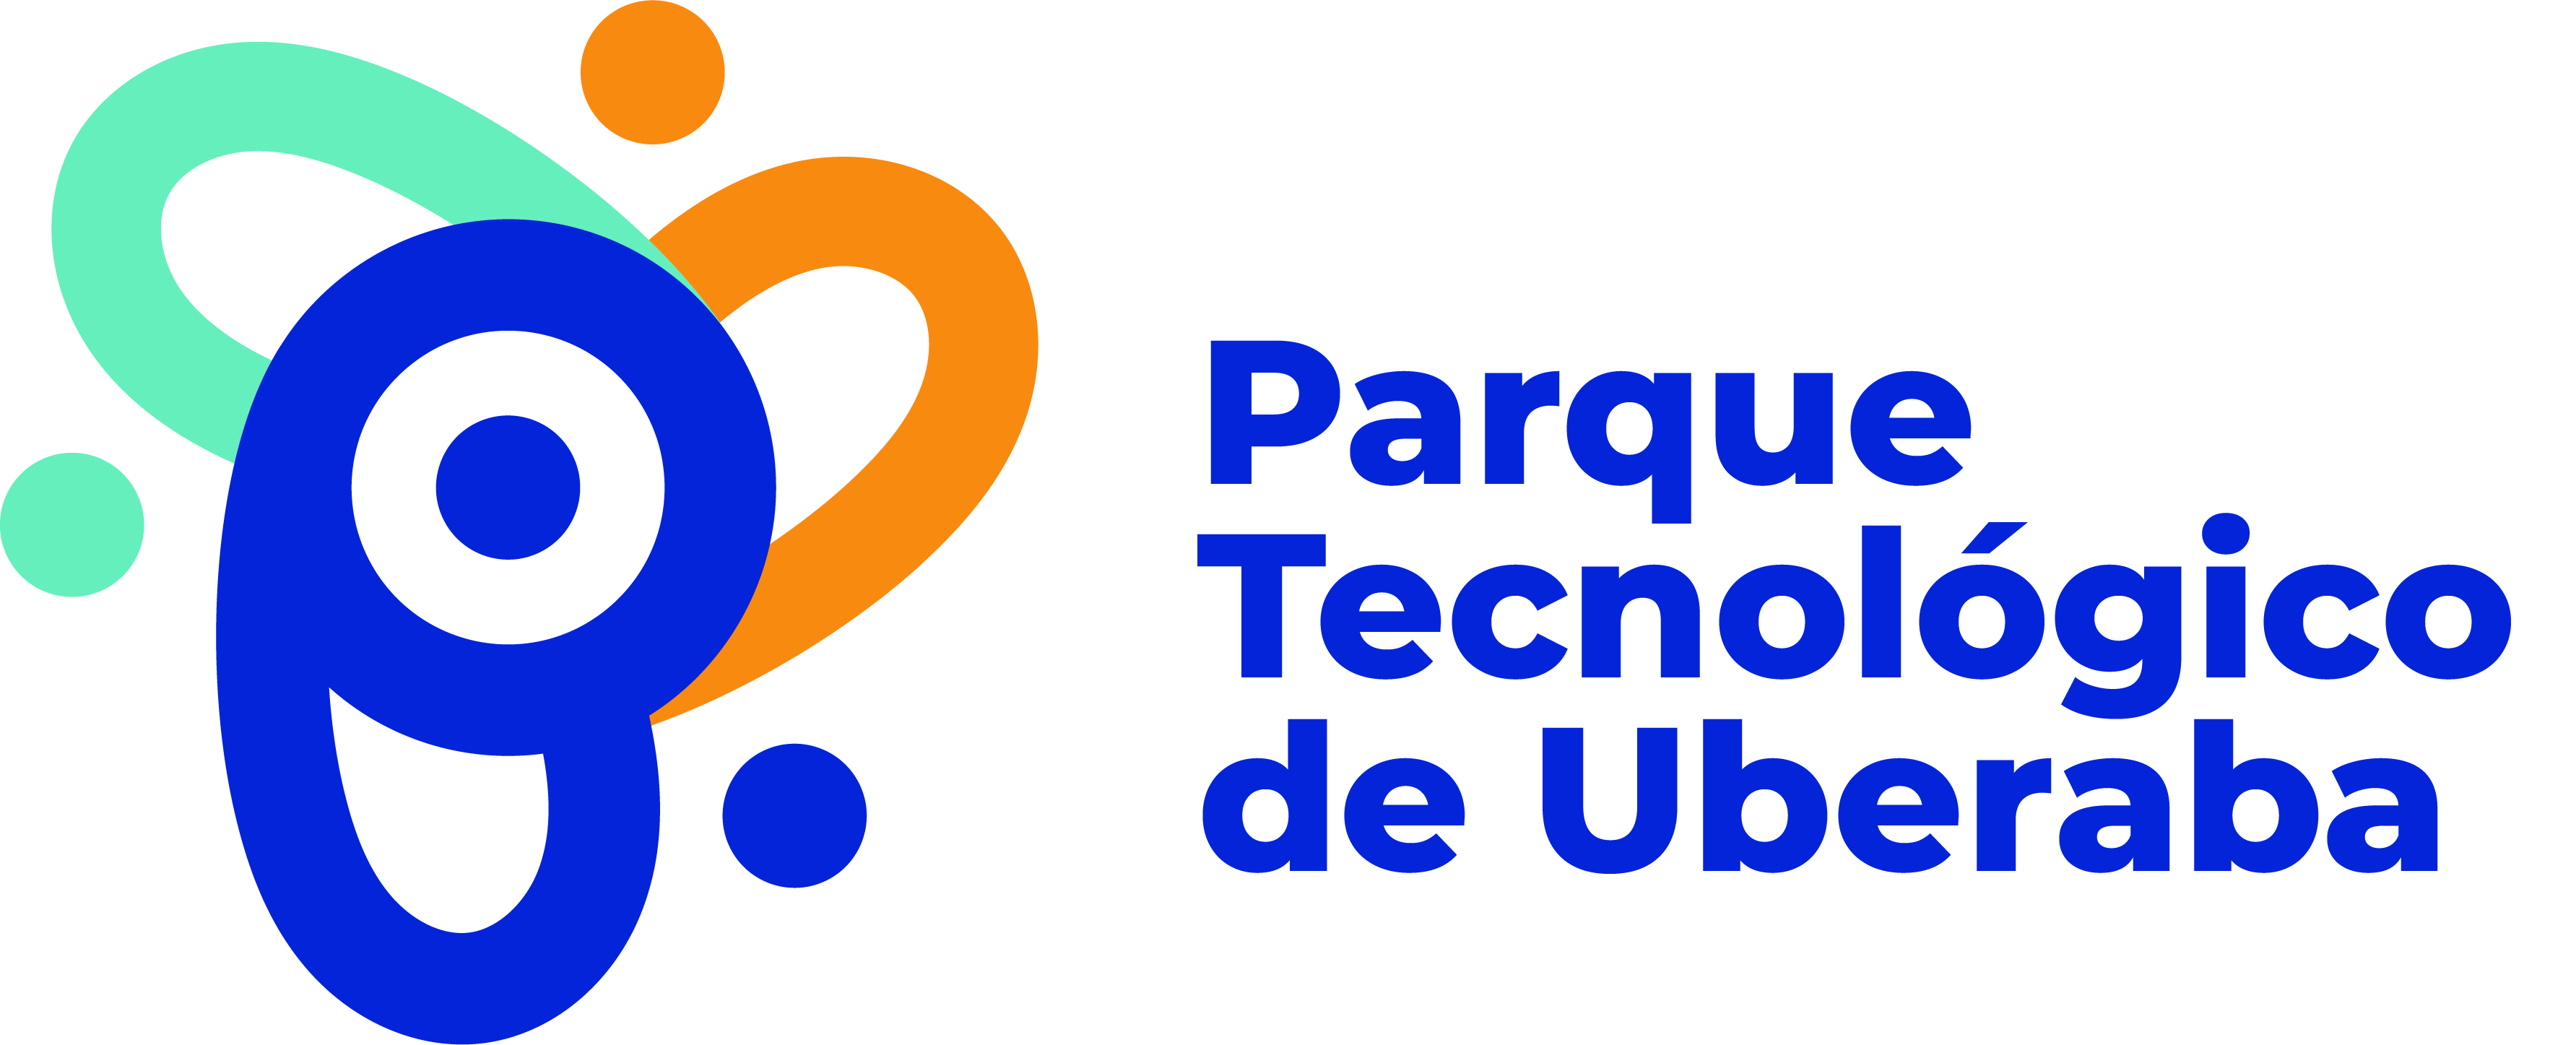 Parque Tecnologico